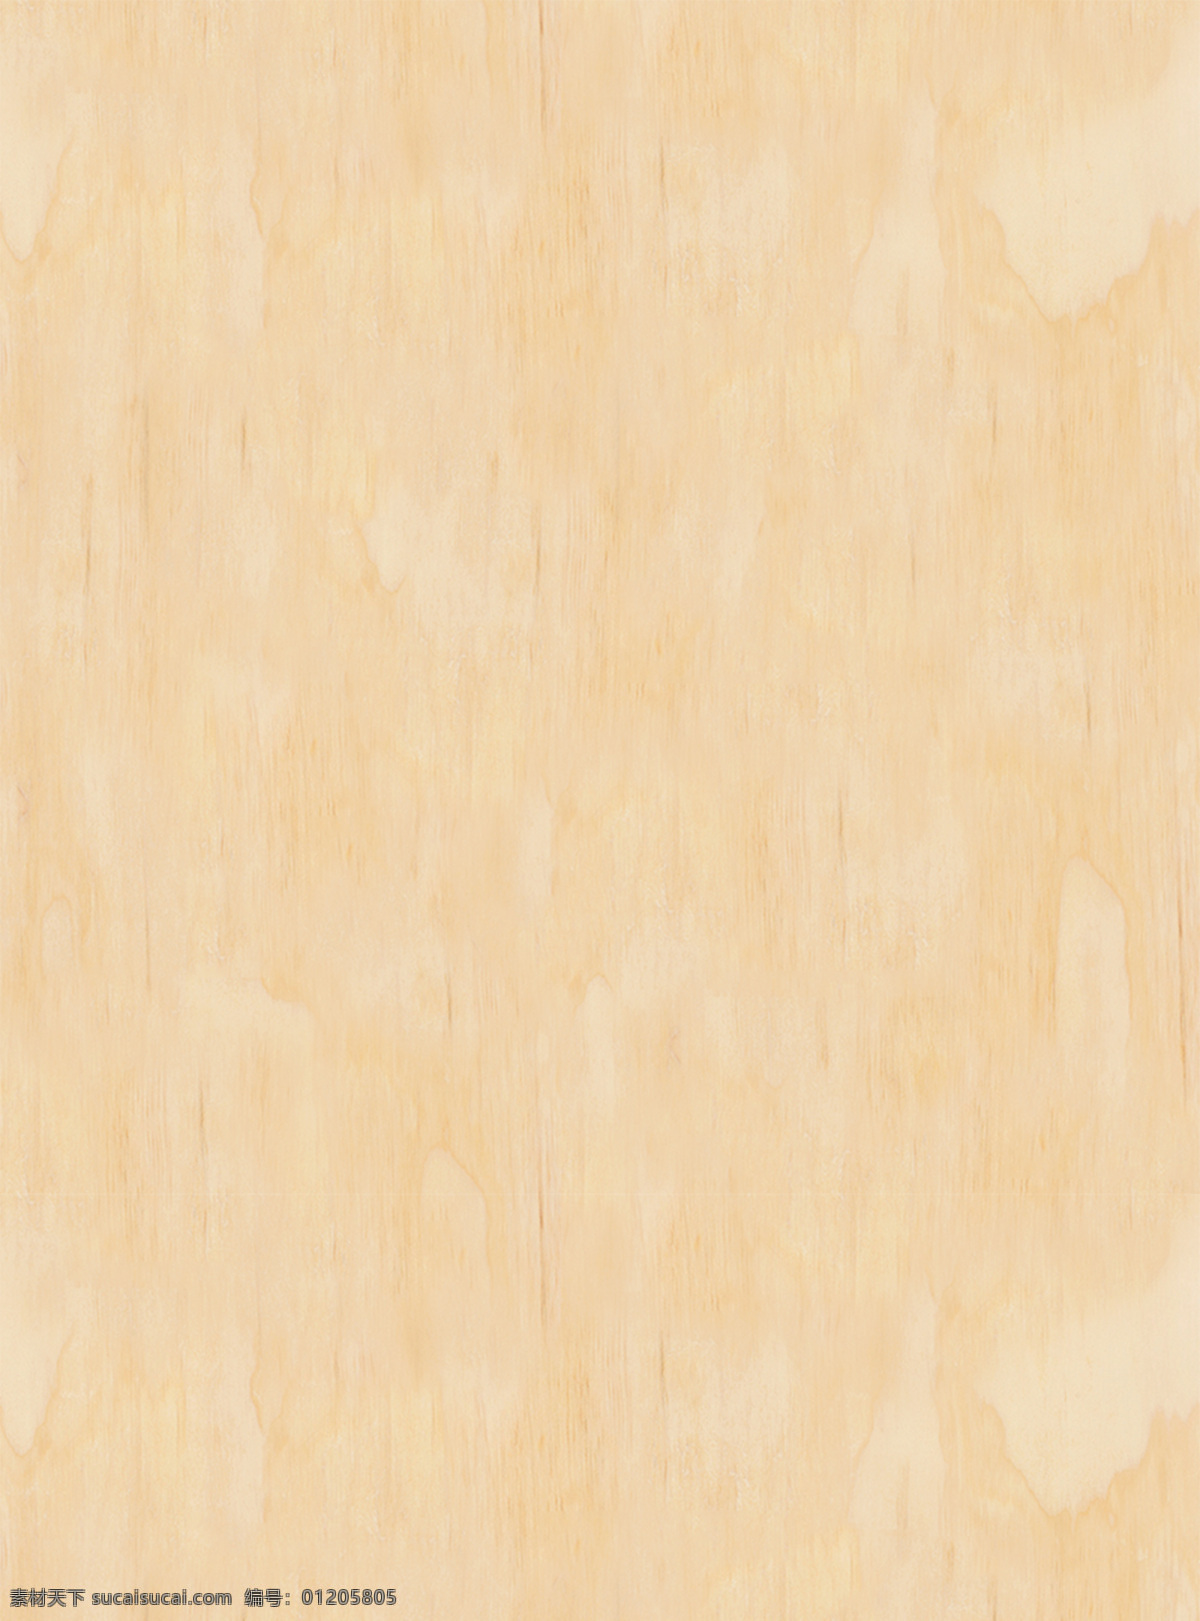 浅色 木纹 背景 纹路 花纹 纹理 肌理 木质 木头 自然 清新 简单 素净 素雅 淡雅 底纹 插图 简约 朴素 质朴 黄色 高清 木 木地板 设计元素素材 设计背景素材 底纹边框 背景底纹